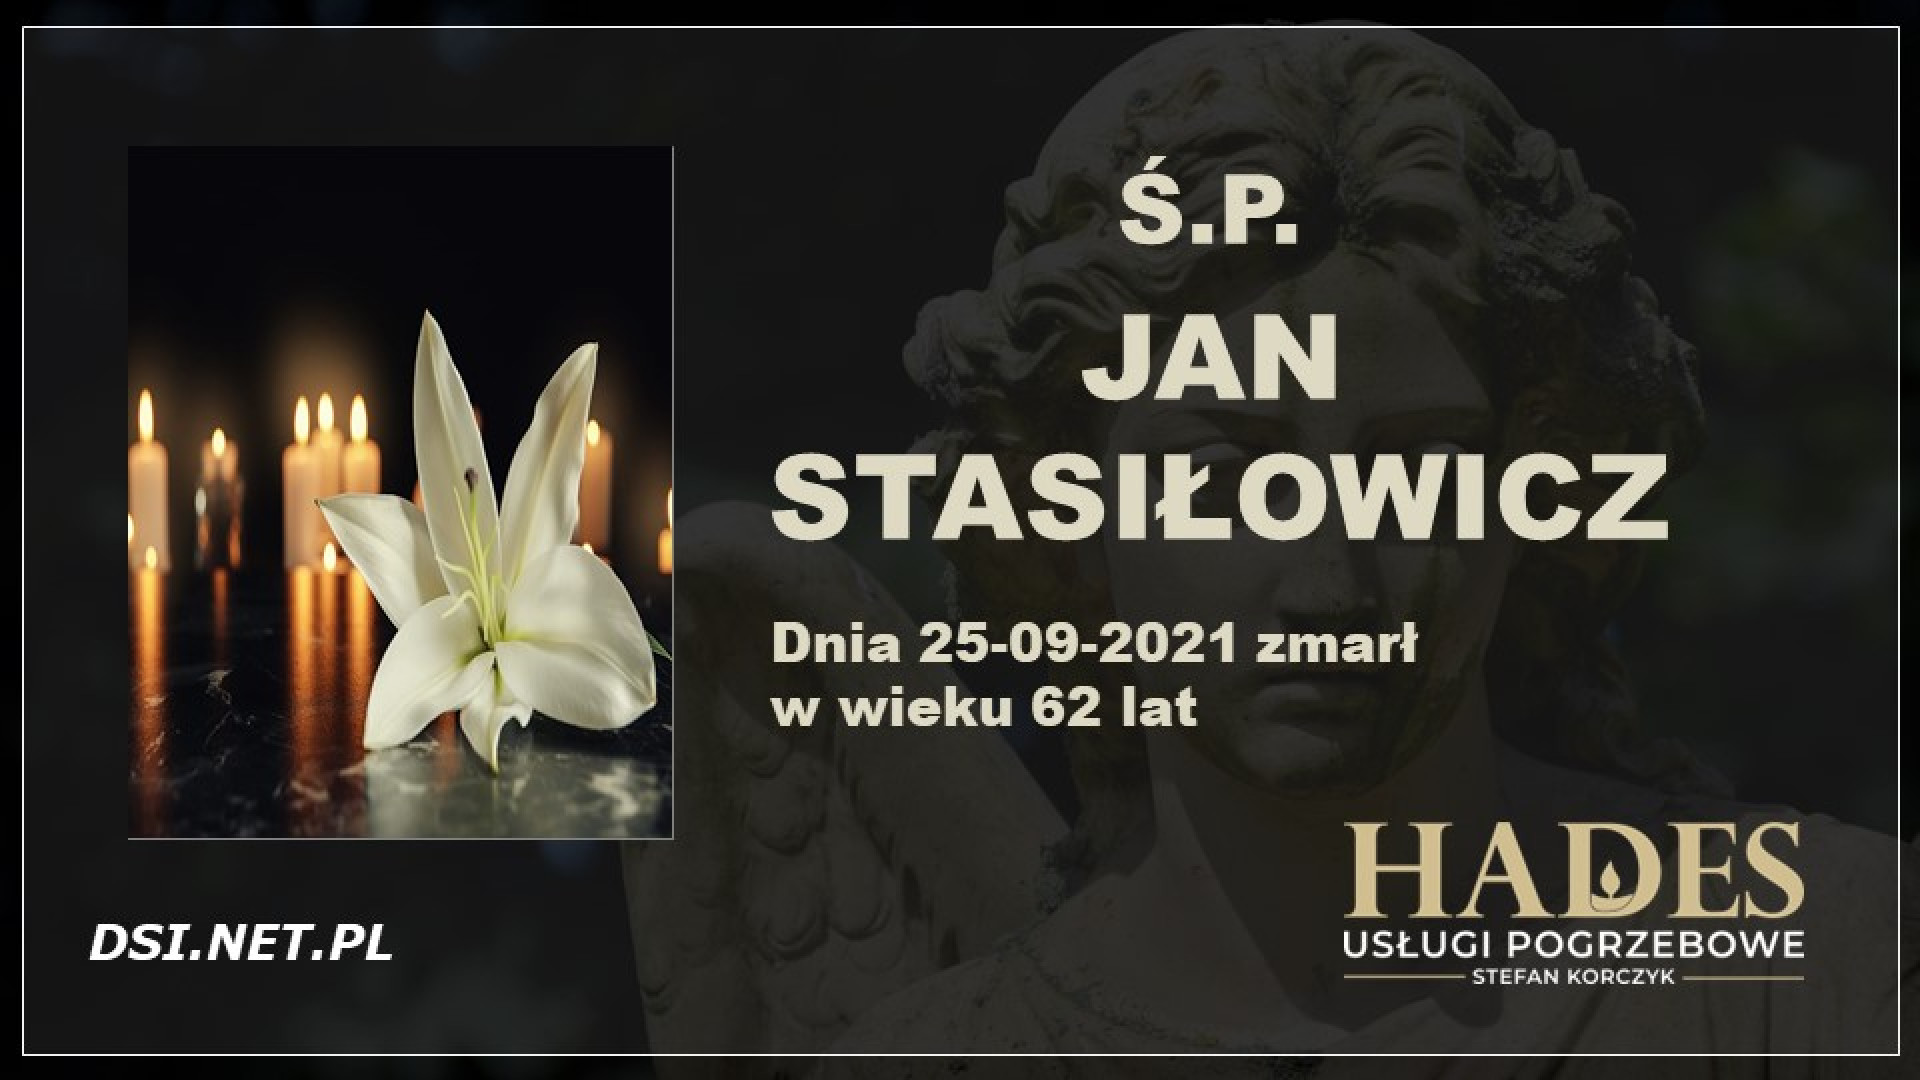 Ś.P. Jan Stasiłowicz